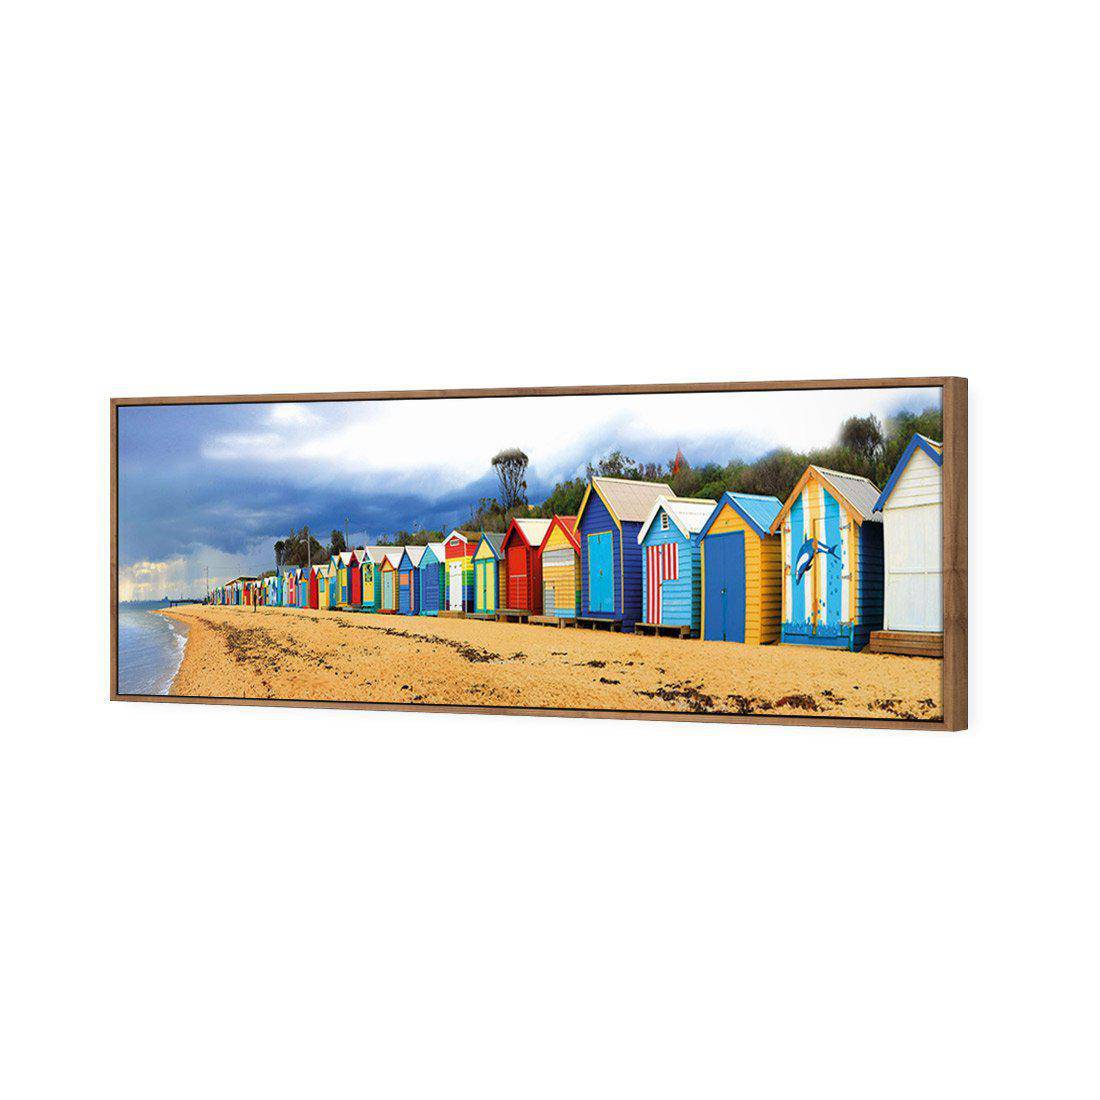 Row Of Beach Boxes Canvas Art-Canvas-Wall Art Designs-60x20cm-Canvas - Natural Frame-Wall Art Designs